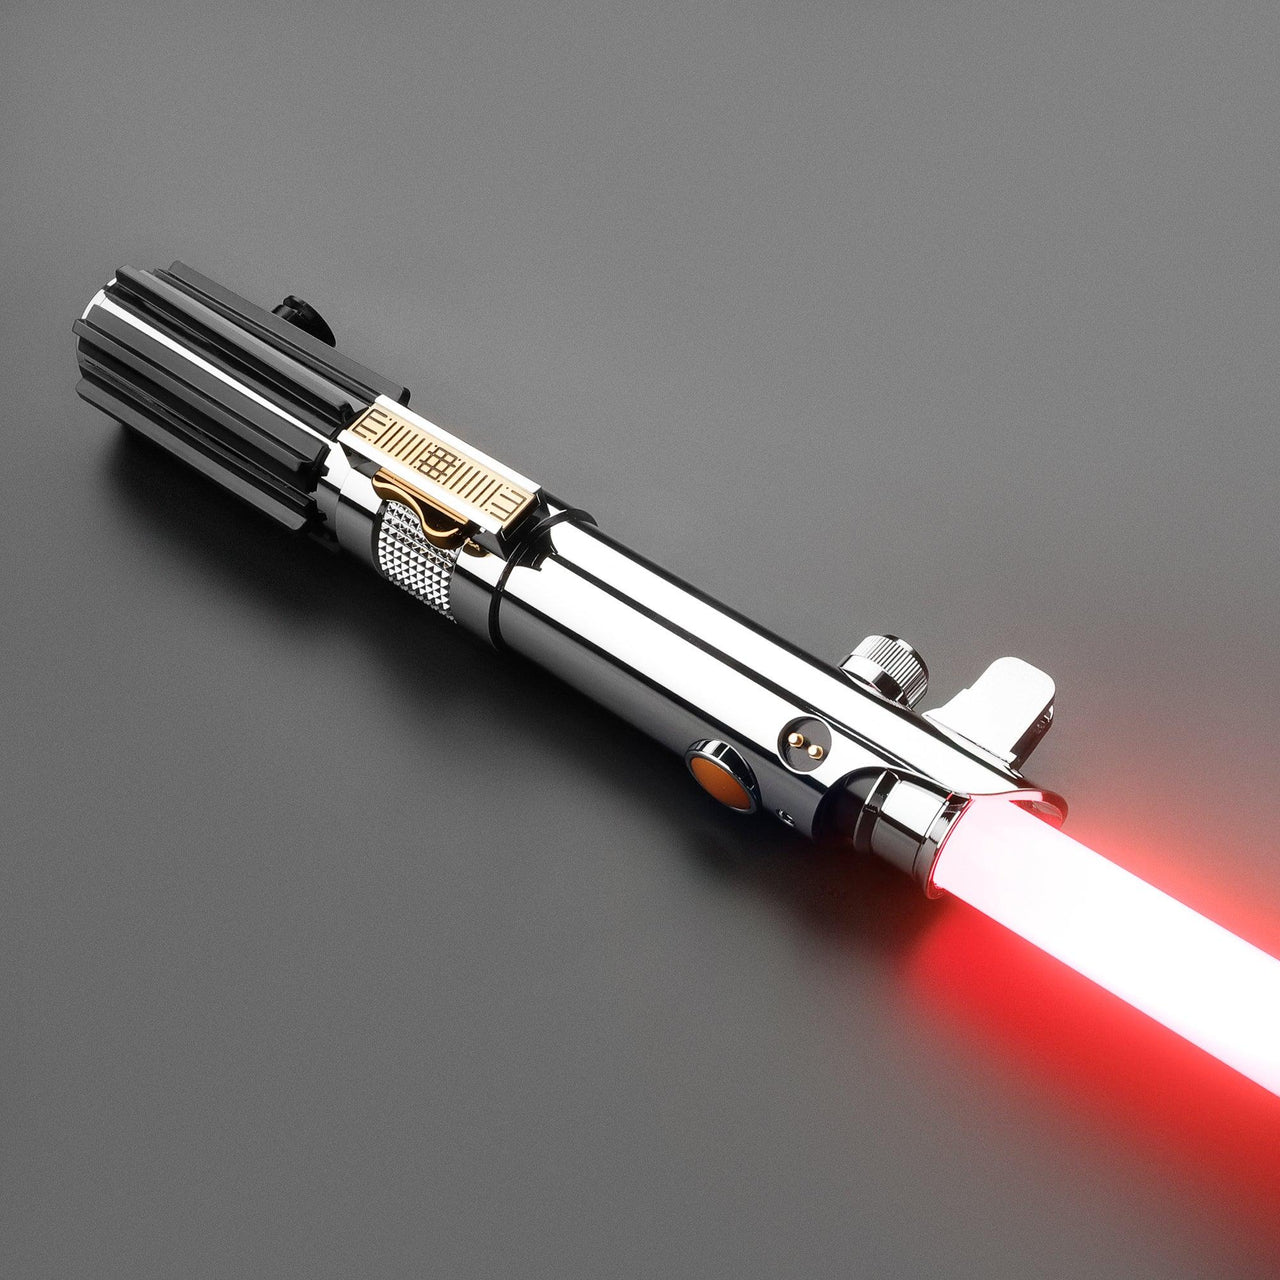 Anakin Skywalker EP3 Neopixel Lichtschwert mit Bluetooth und App - SABER KING FX LIGHTSABERS®